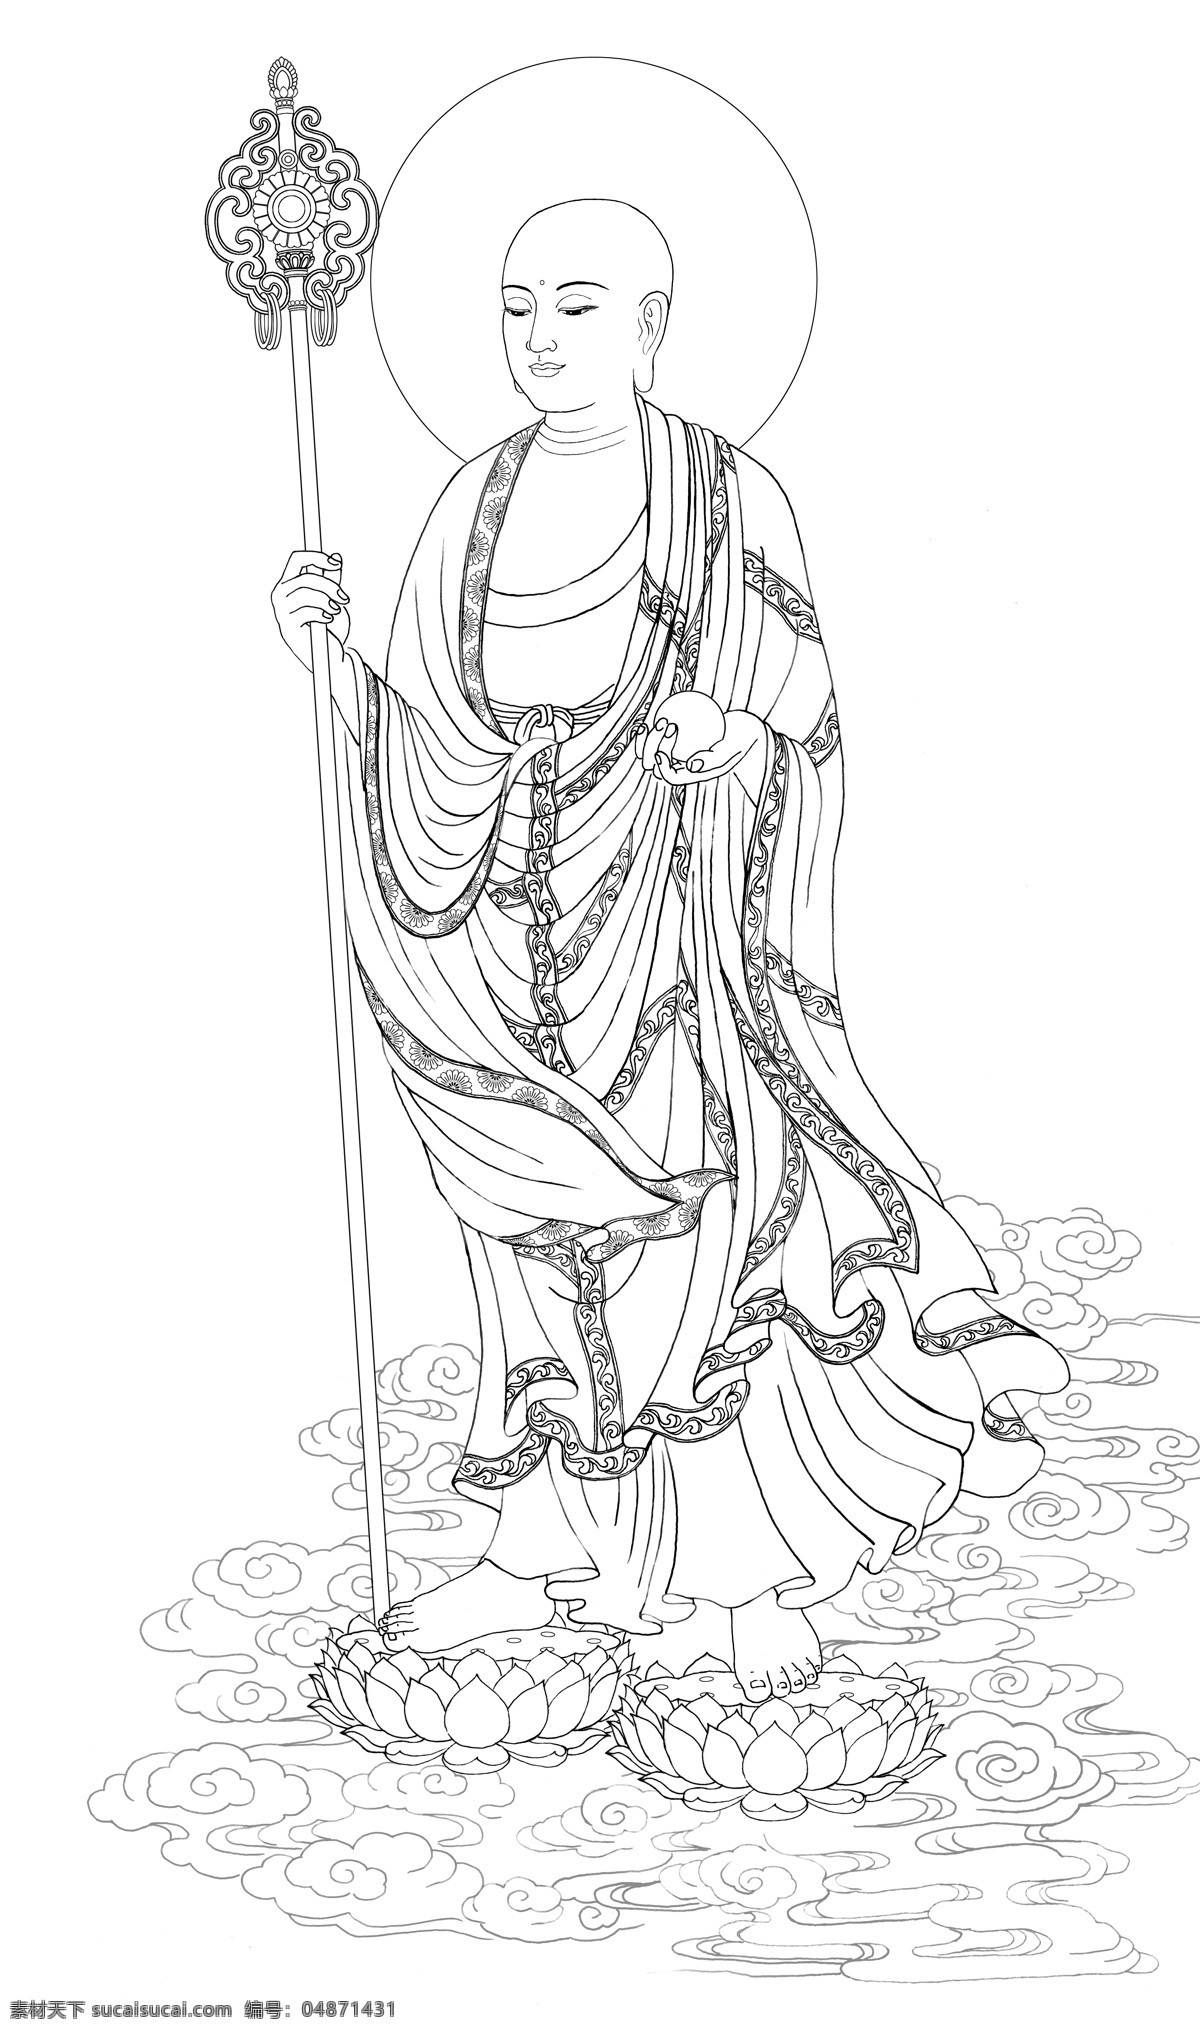 地藏菩萨 立像 线描 精细 版 佛 佛像 佛教 地藏 菩萨 地藏王 造像 白描 佛画 画佛 文化艺术 宗教信仰